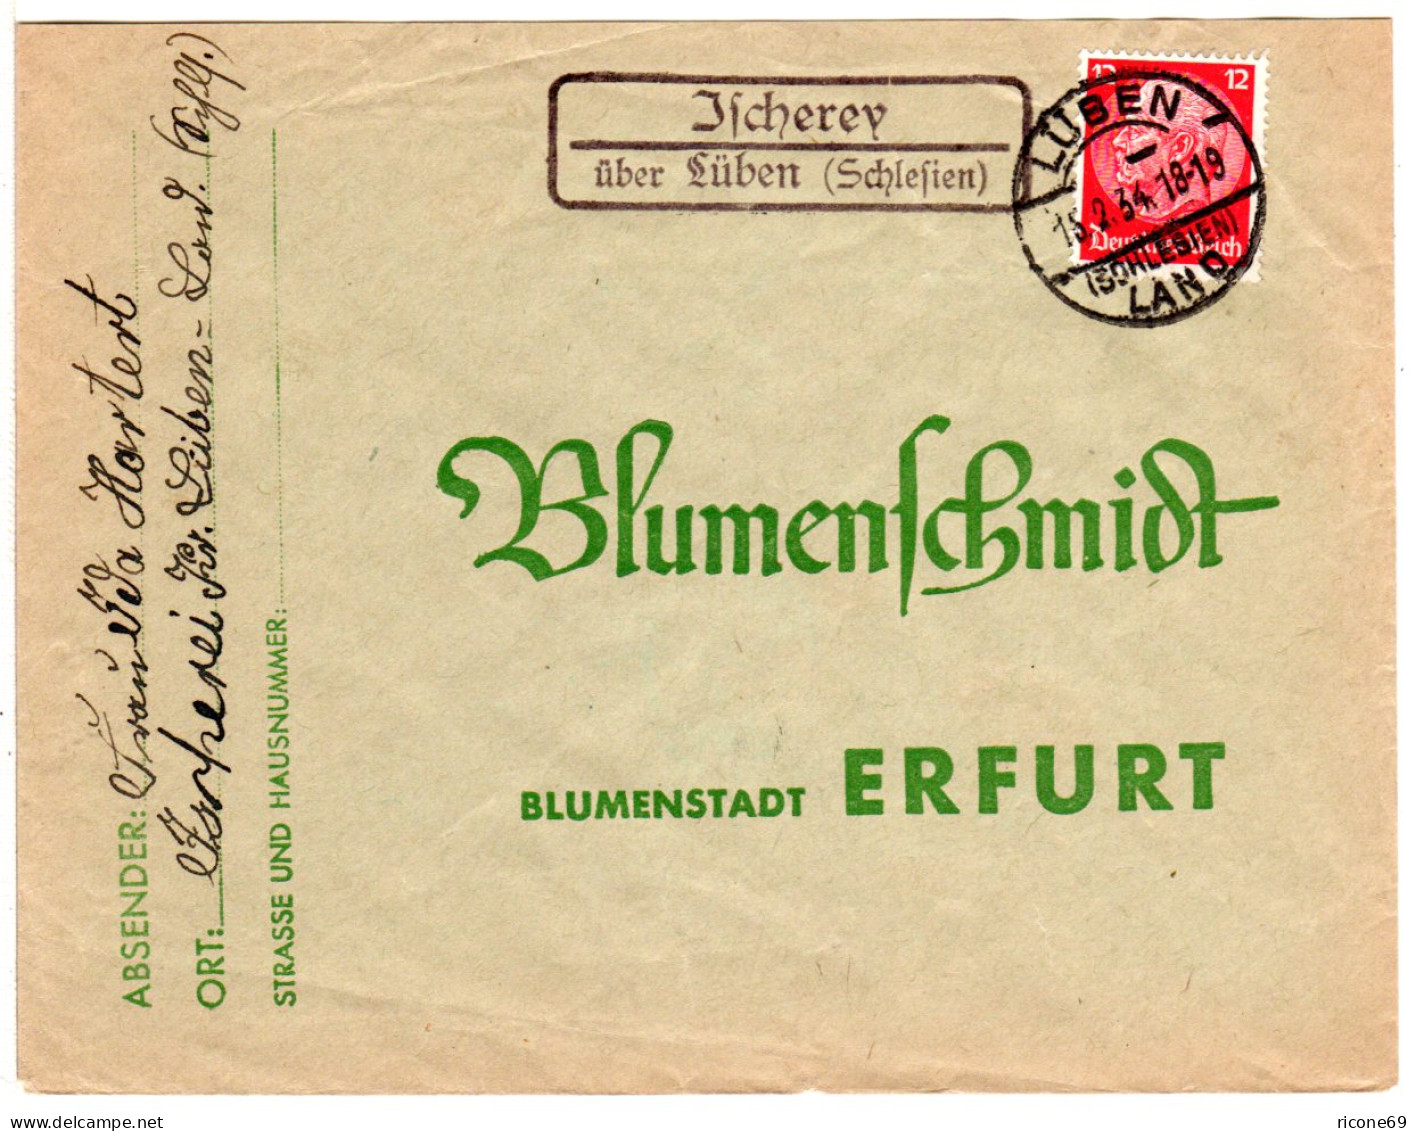 DR 1934, Landpost Stpl. Ischerey über Lüben (Schlesien) Auf Brief M. 12 Pfg. - Covers & Documents